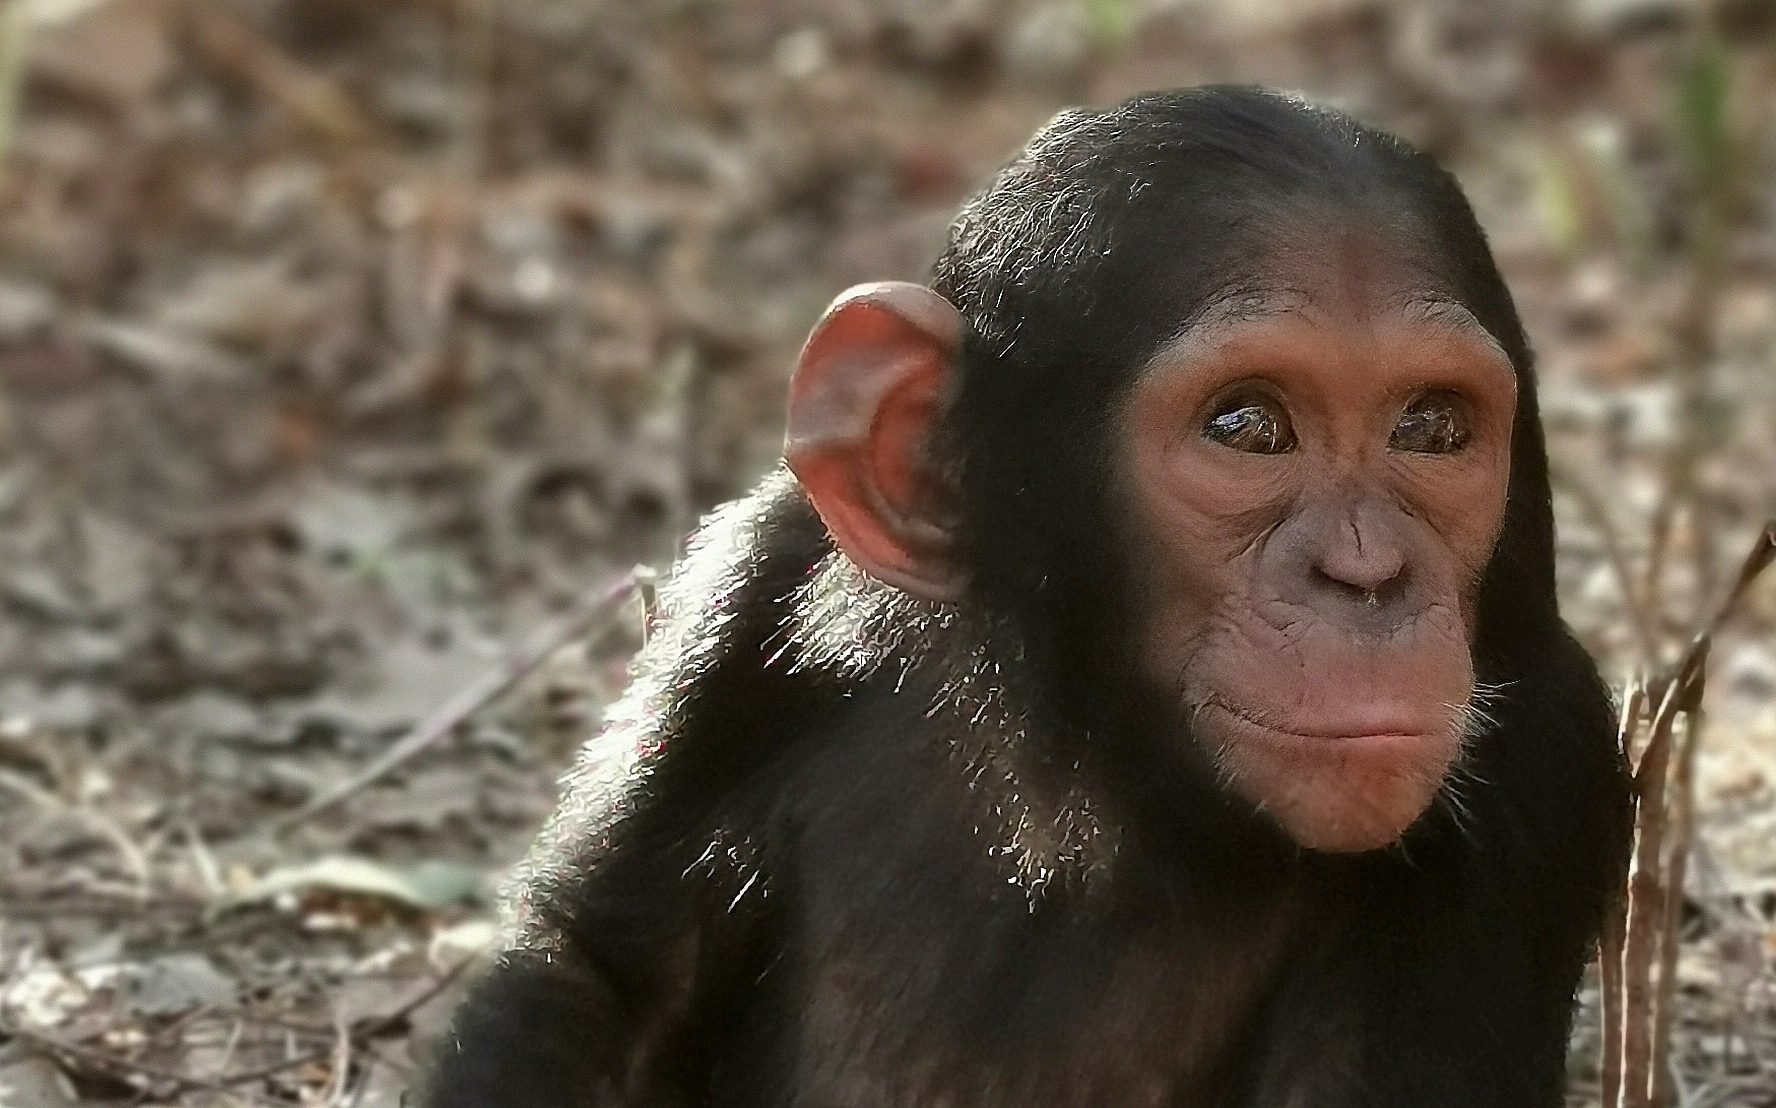 Curious chimps